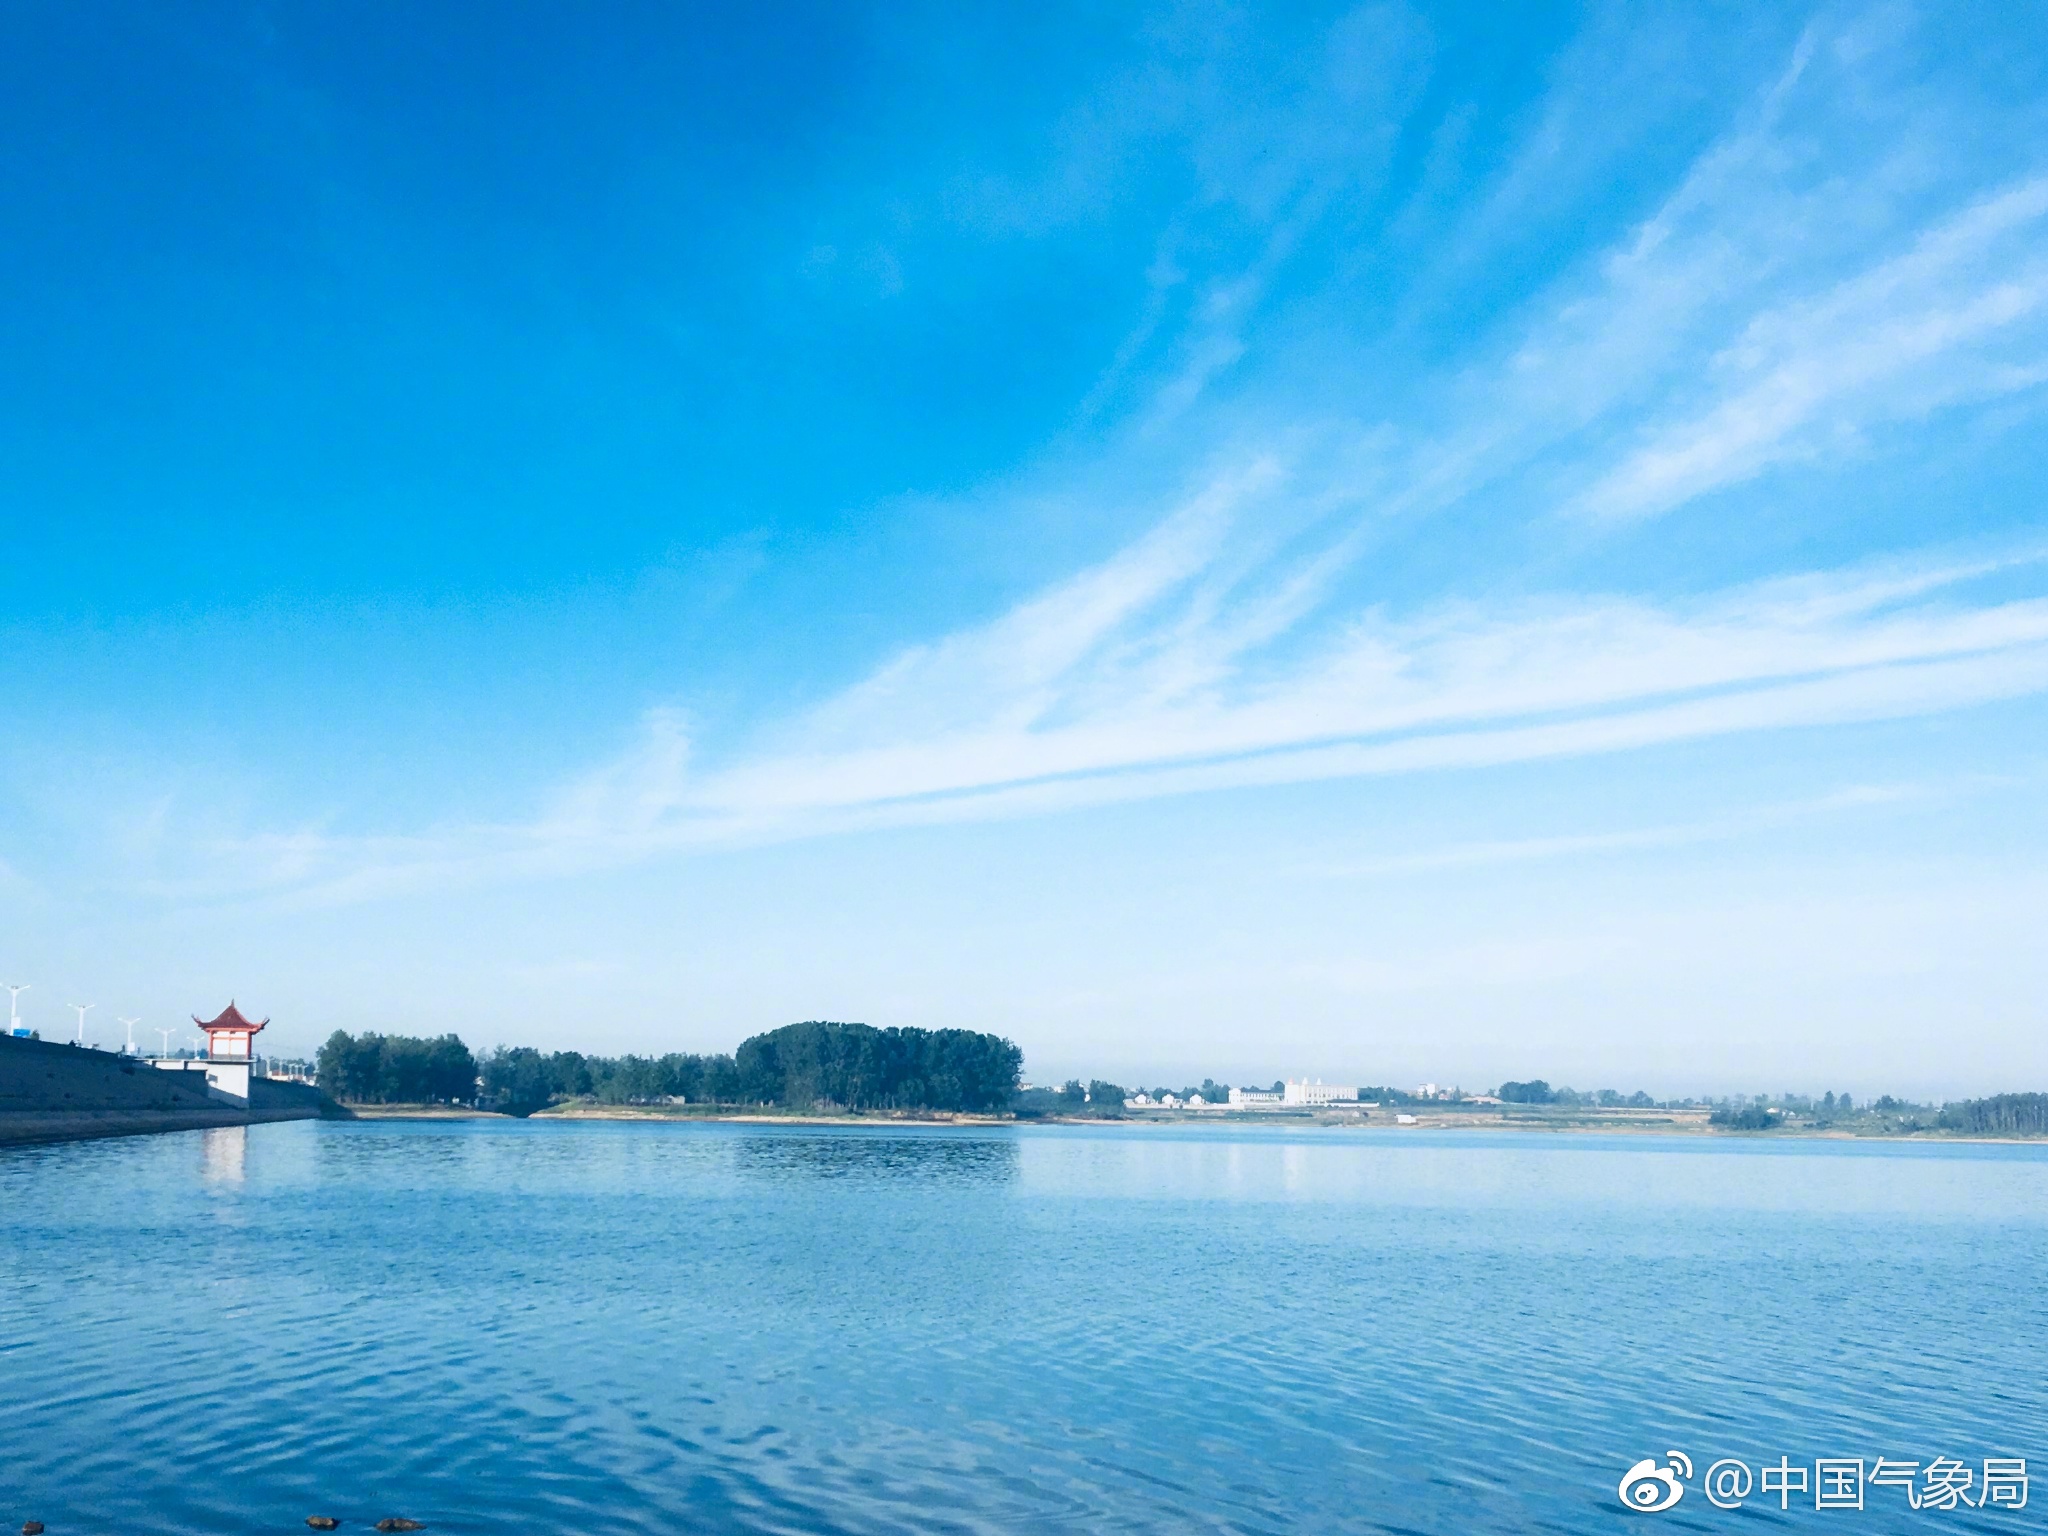 是否期待周日的清晨,就这么美的景象?坐标连云港赣榆塔山水库